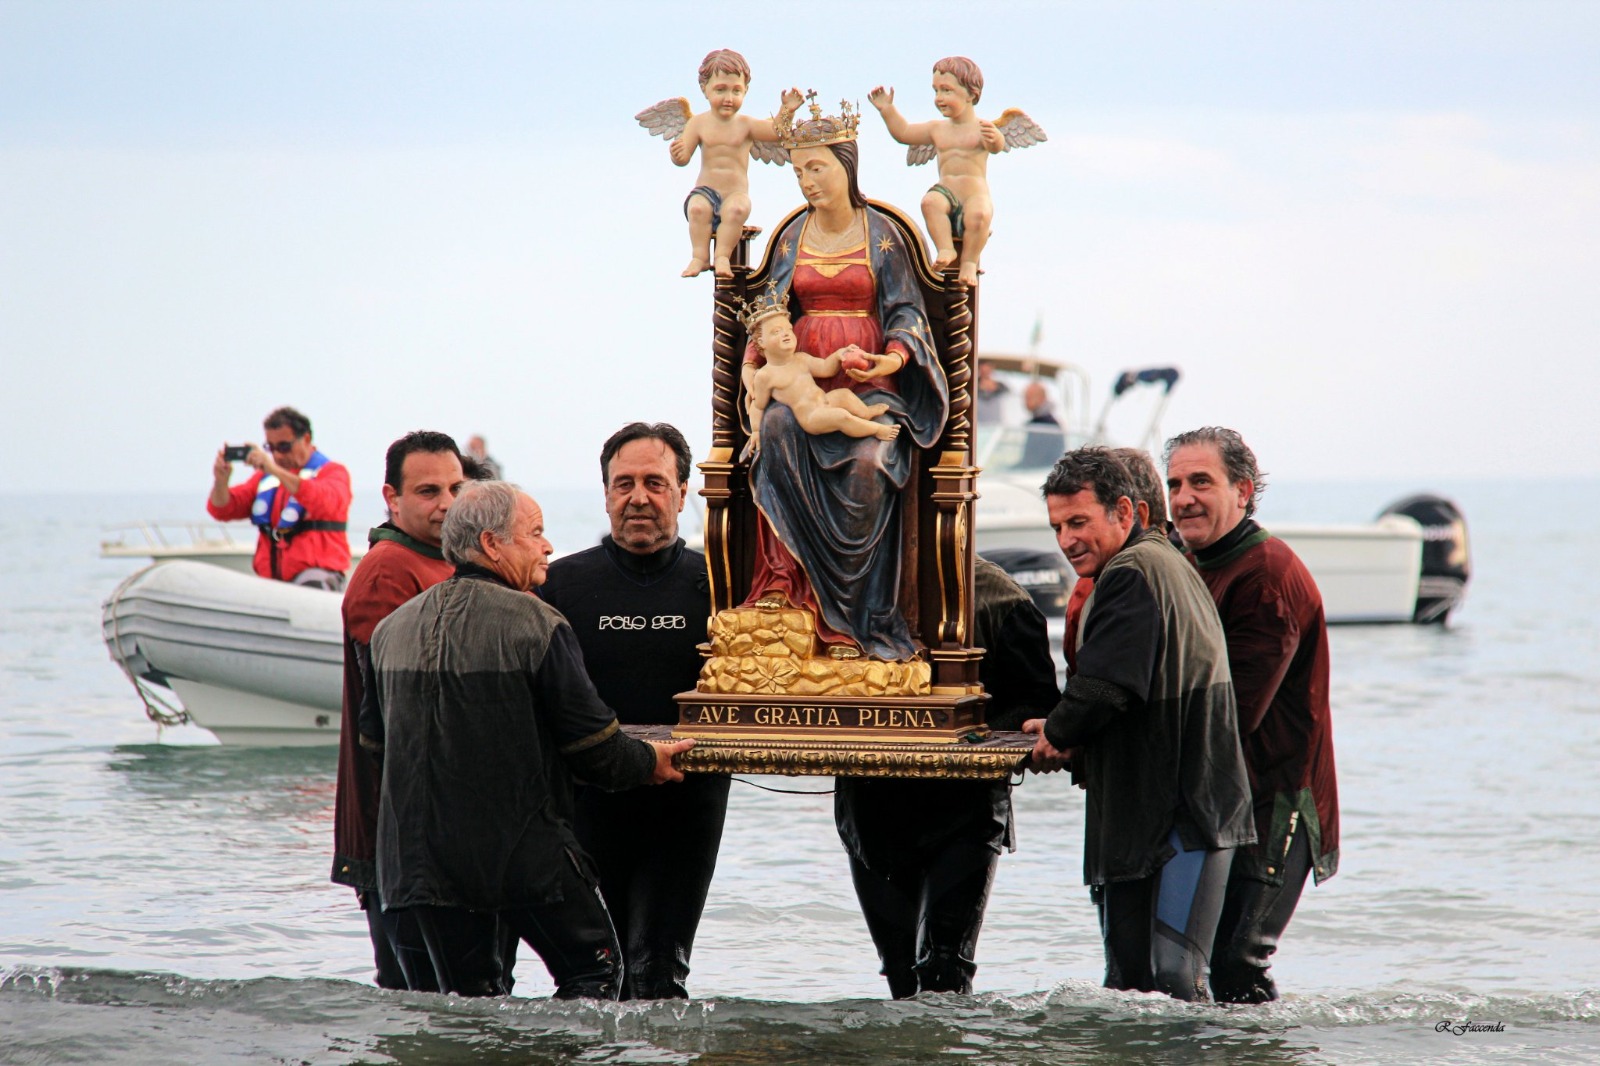 Nettuno festeggia l’approdo della Madonna delle Grazie. Appuntamento per il 7 maggio